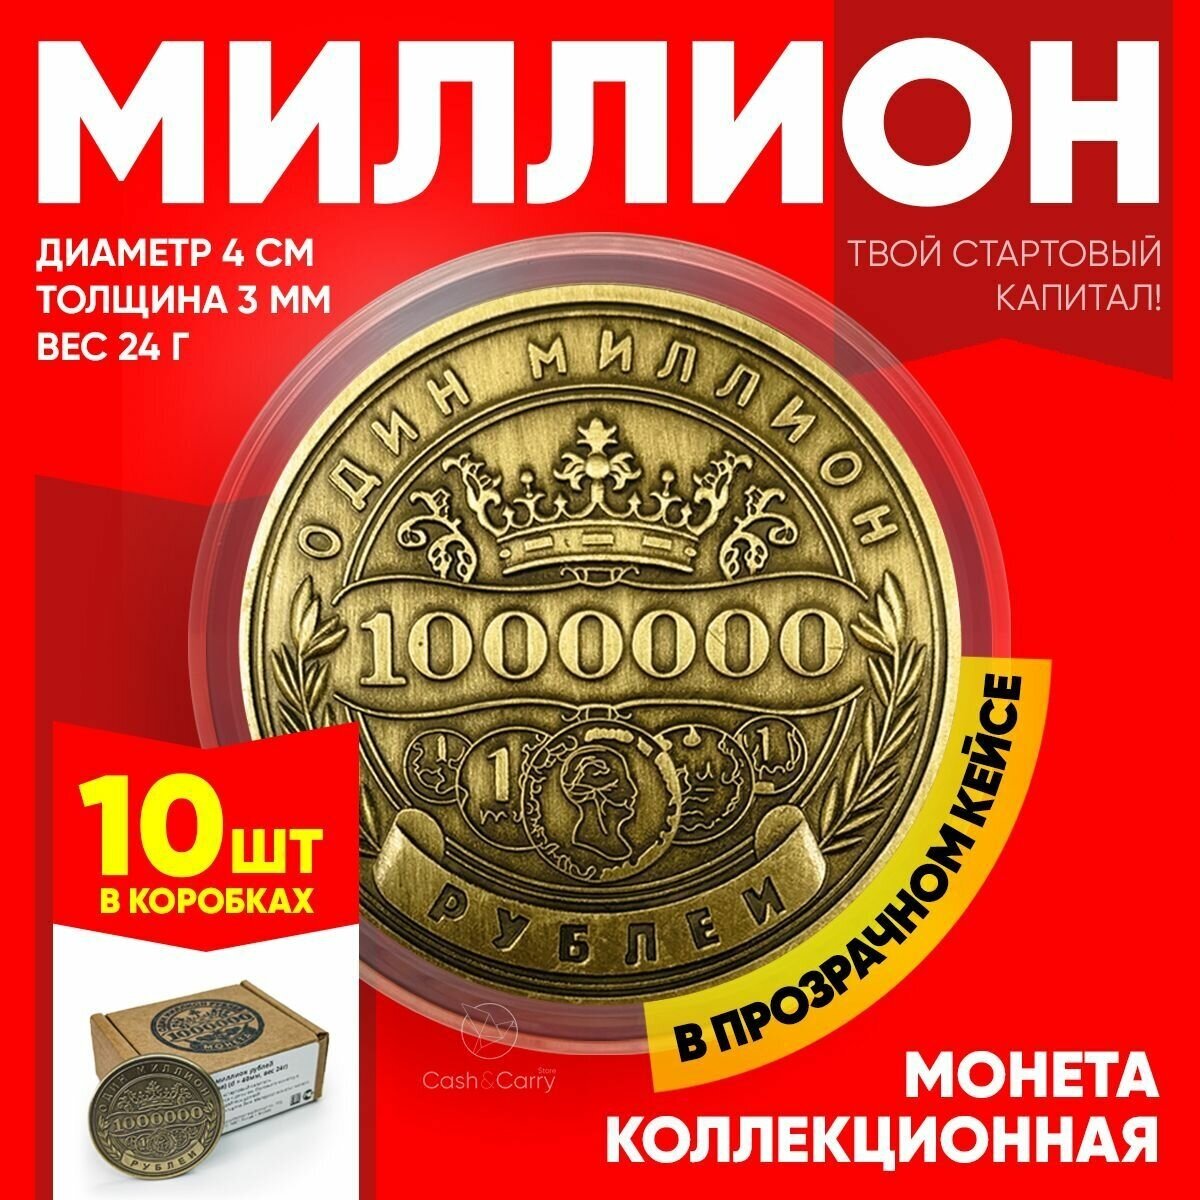 Монеты сувенирные подарочные "10 миллионов рублей" / 10000000 руб / 10 млн. руб (Золото) в пластиковом прозрачном футляре (d 40 мм, вес 24 г)